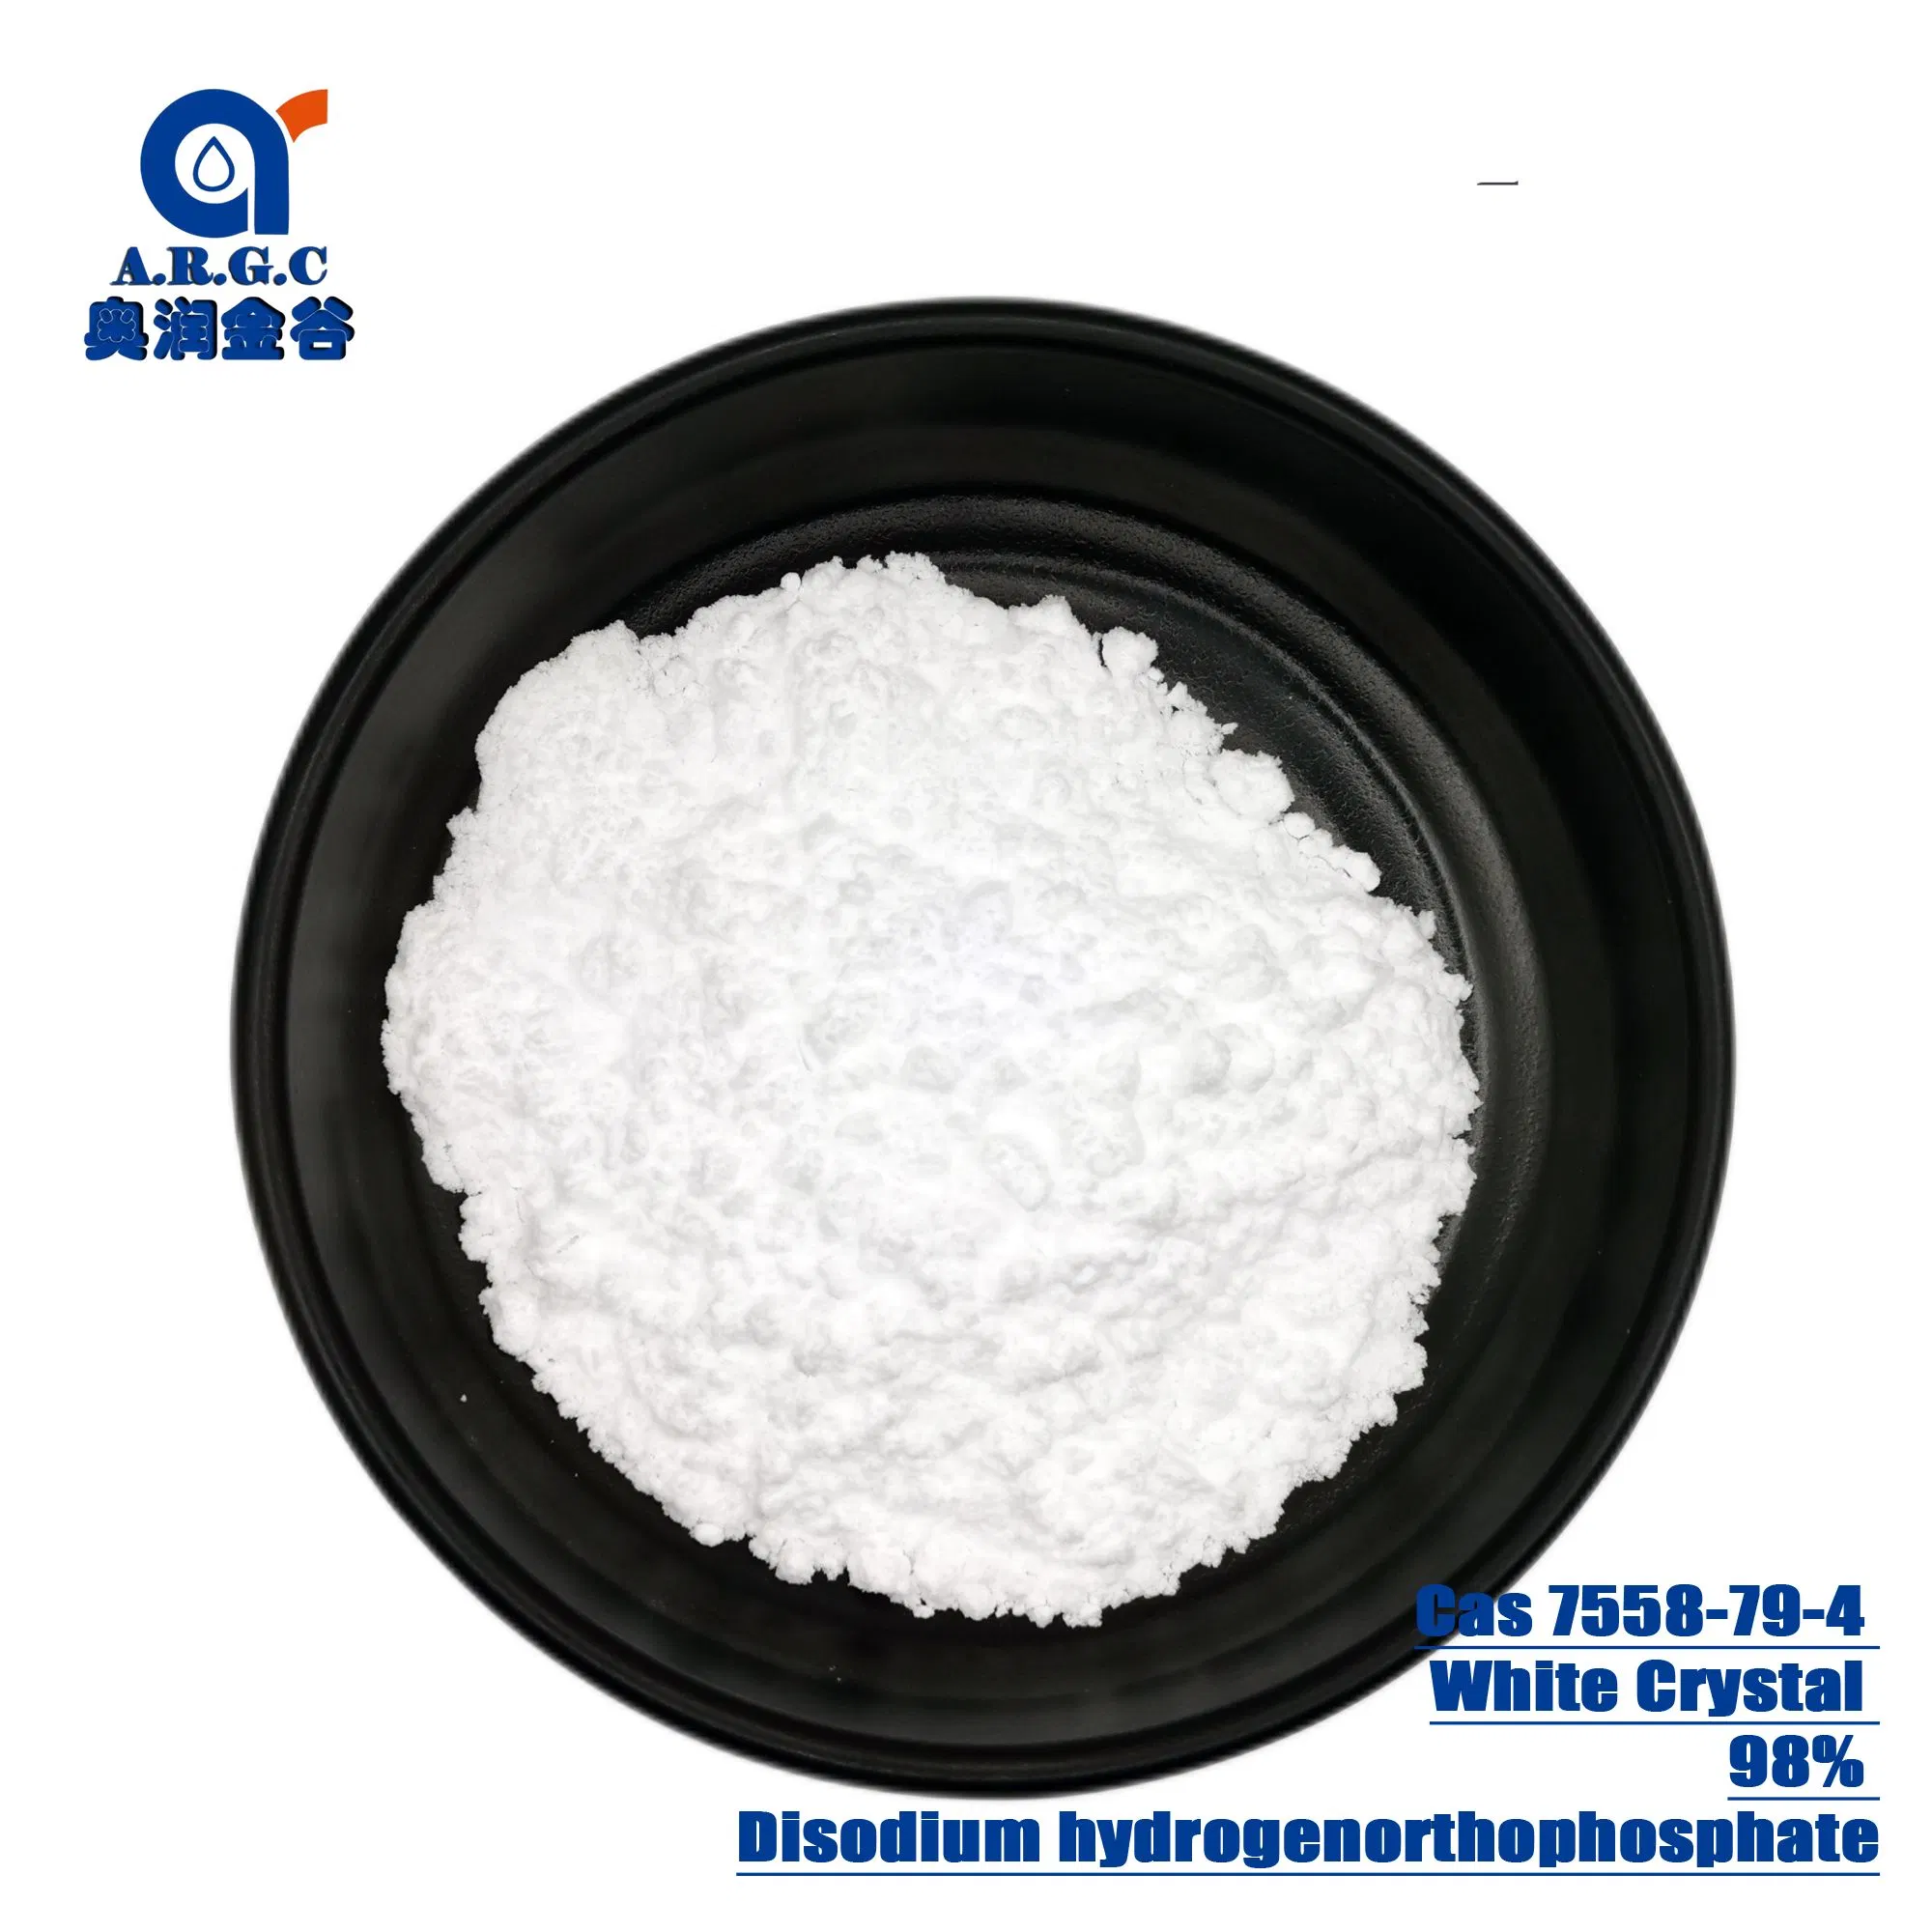 Grau de alimentos de alta qualidade de fosfato de sódio CAS 7558-79-4 com bom preço